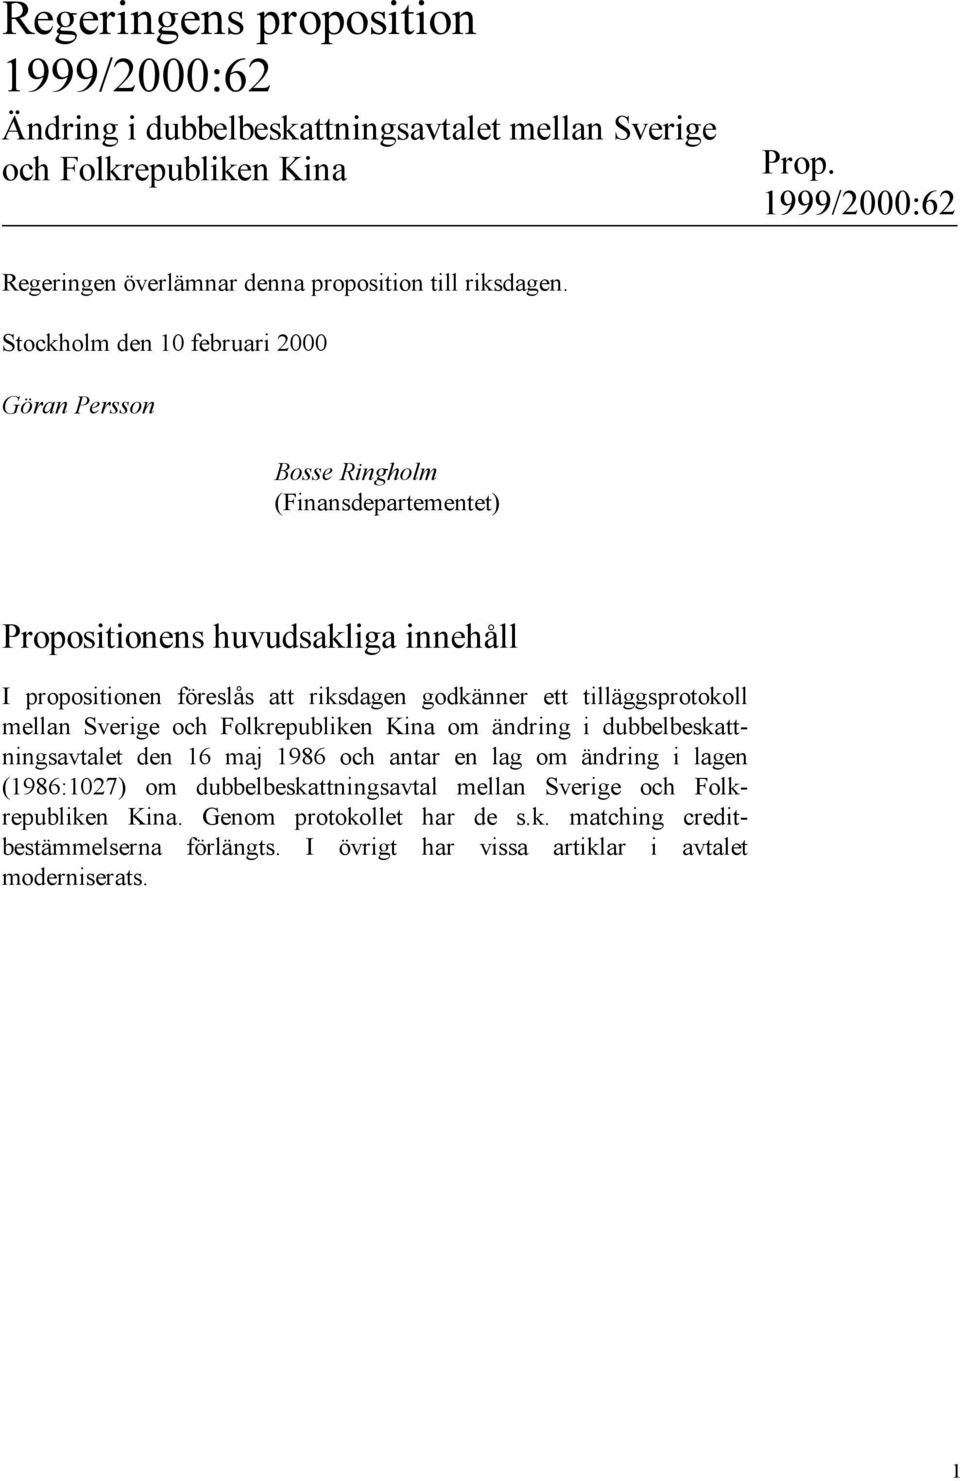 Stockholm den 10 februari 2000 Göran Persson Bosse Ringholm (Finansdepartementet) Propositionens huvudsakliga innehåll I propositionen föreslås att riksdagen godkänner ett